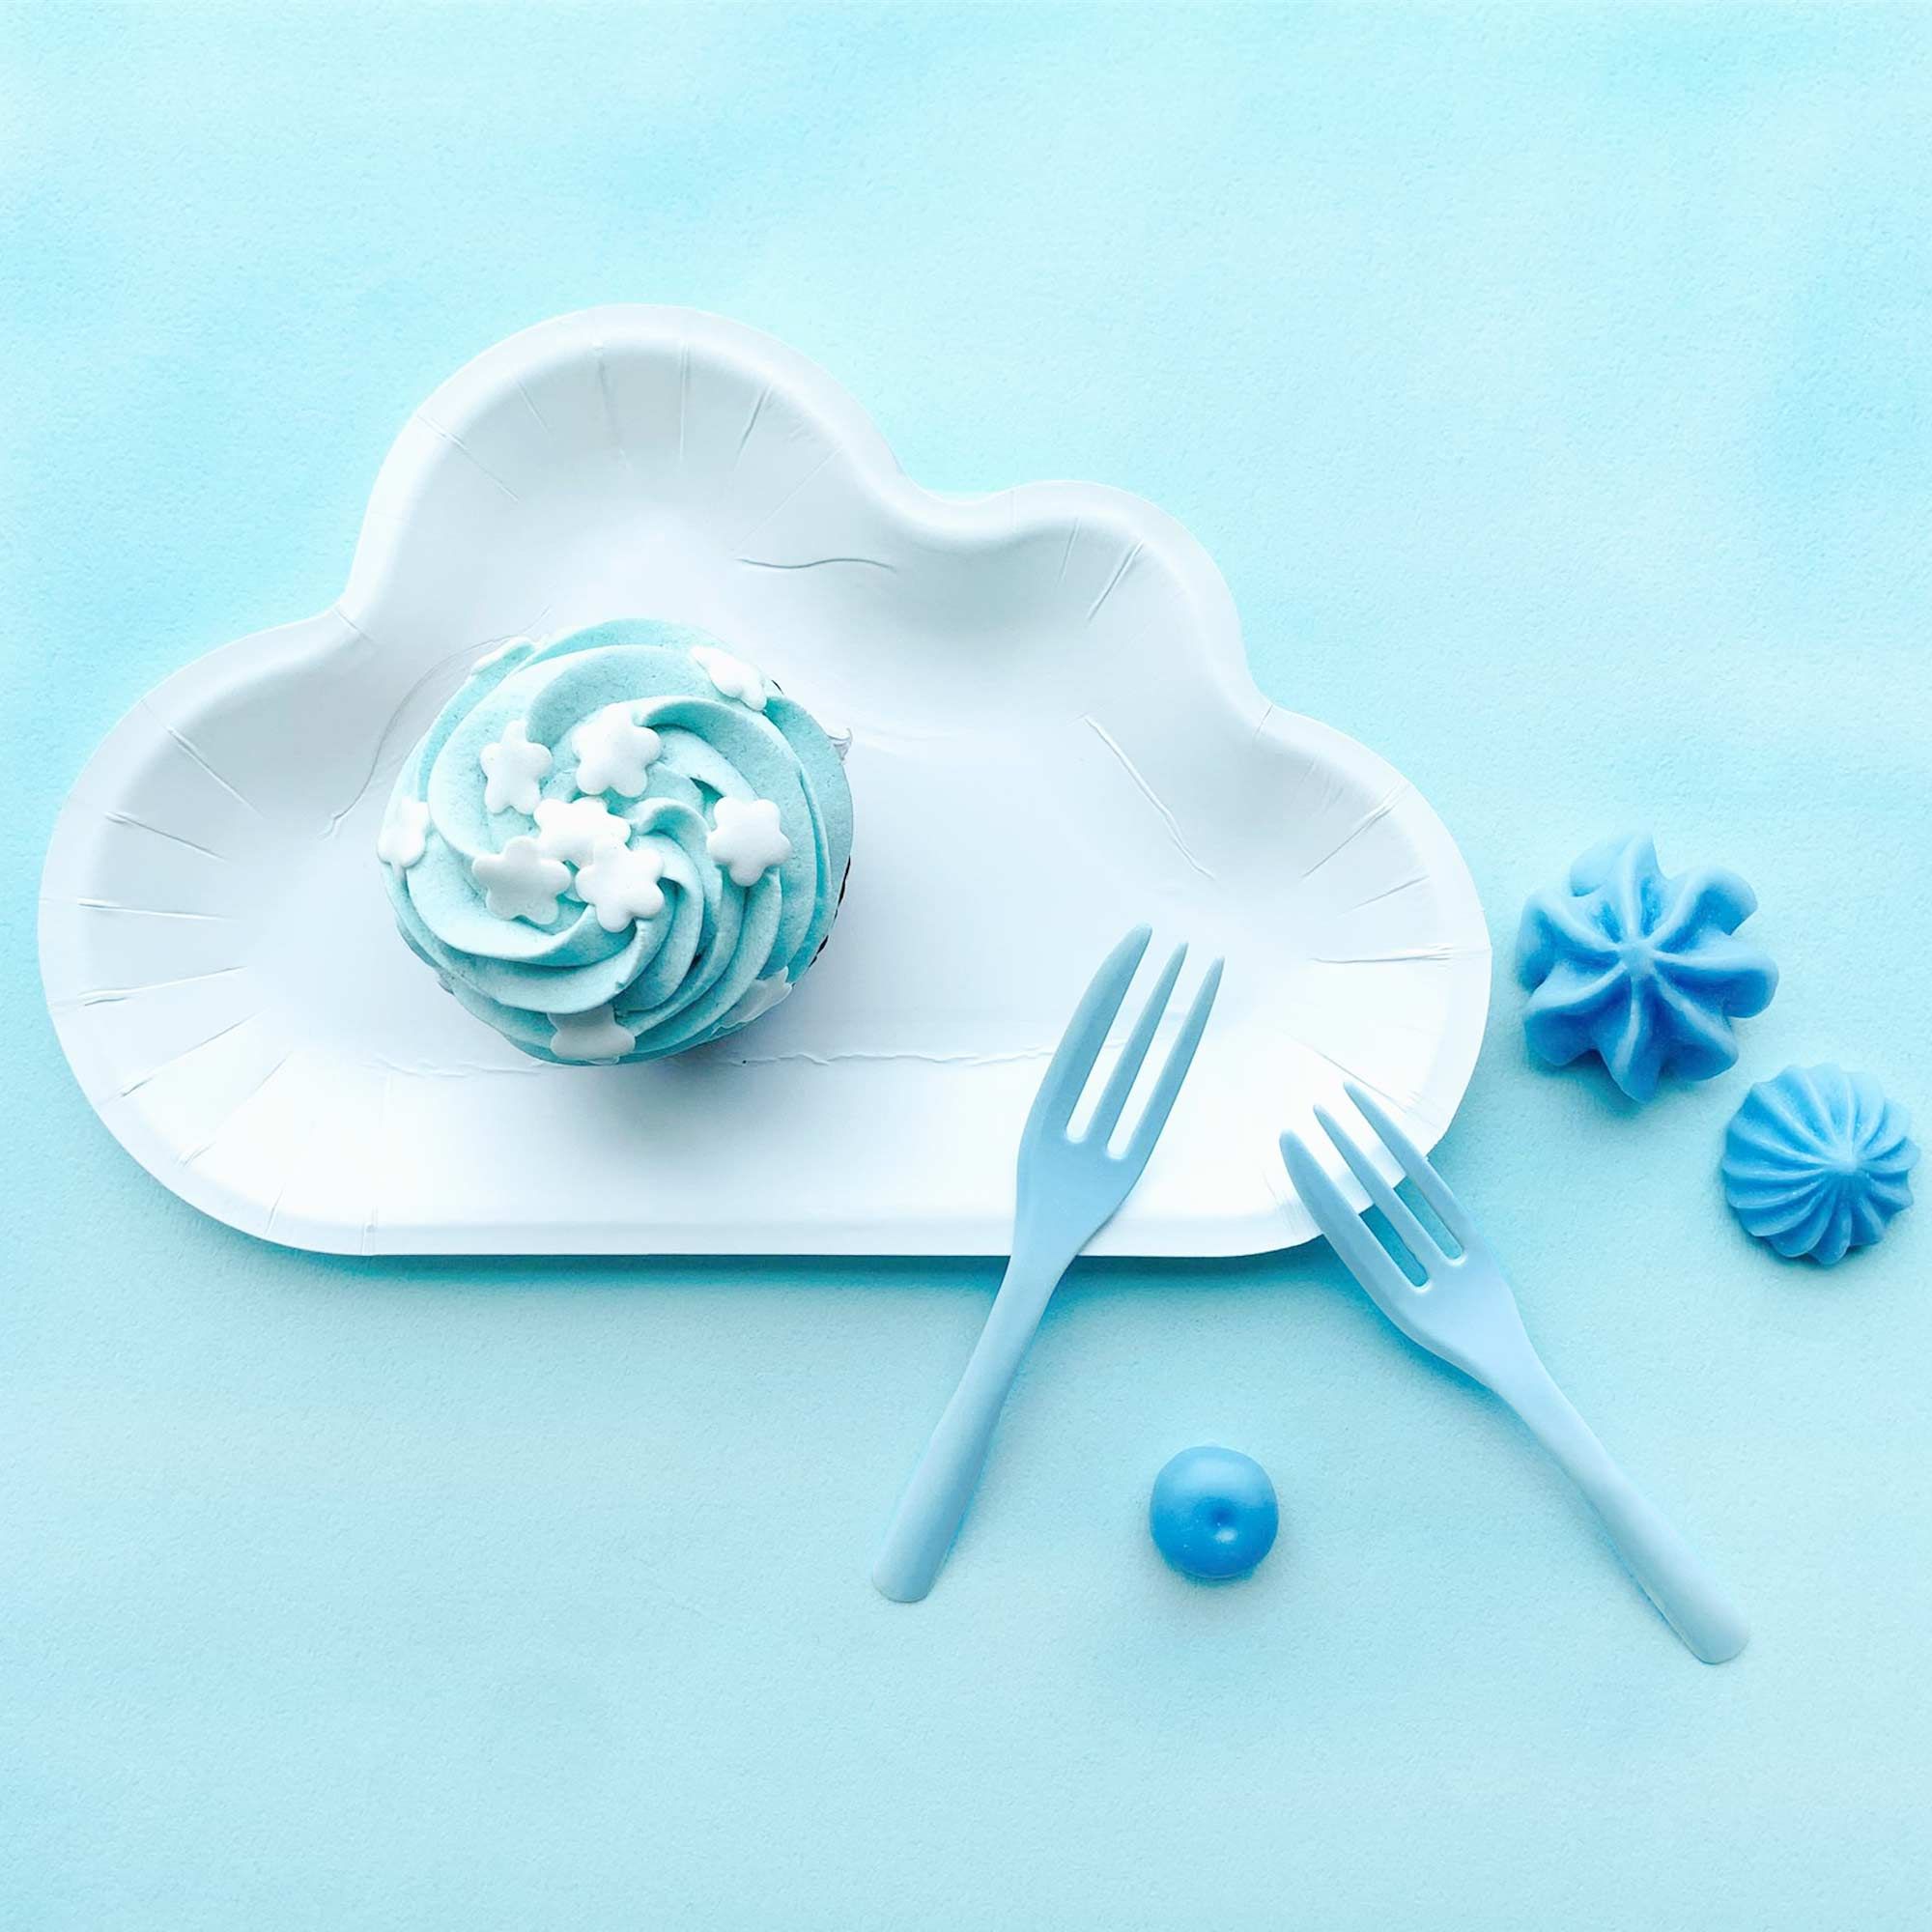 सफेद बादल आकार की प्लेट जोड़ी नीले केक फोर्क के साथ एक ऐसा माहौल बनाती है जो एक नीले आसमान की तरह भरे हुए बादलों की याद दिलाता है।